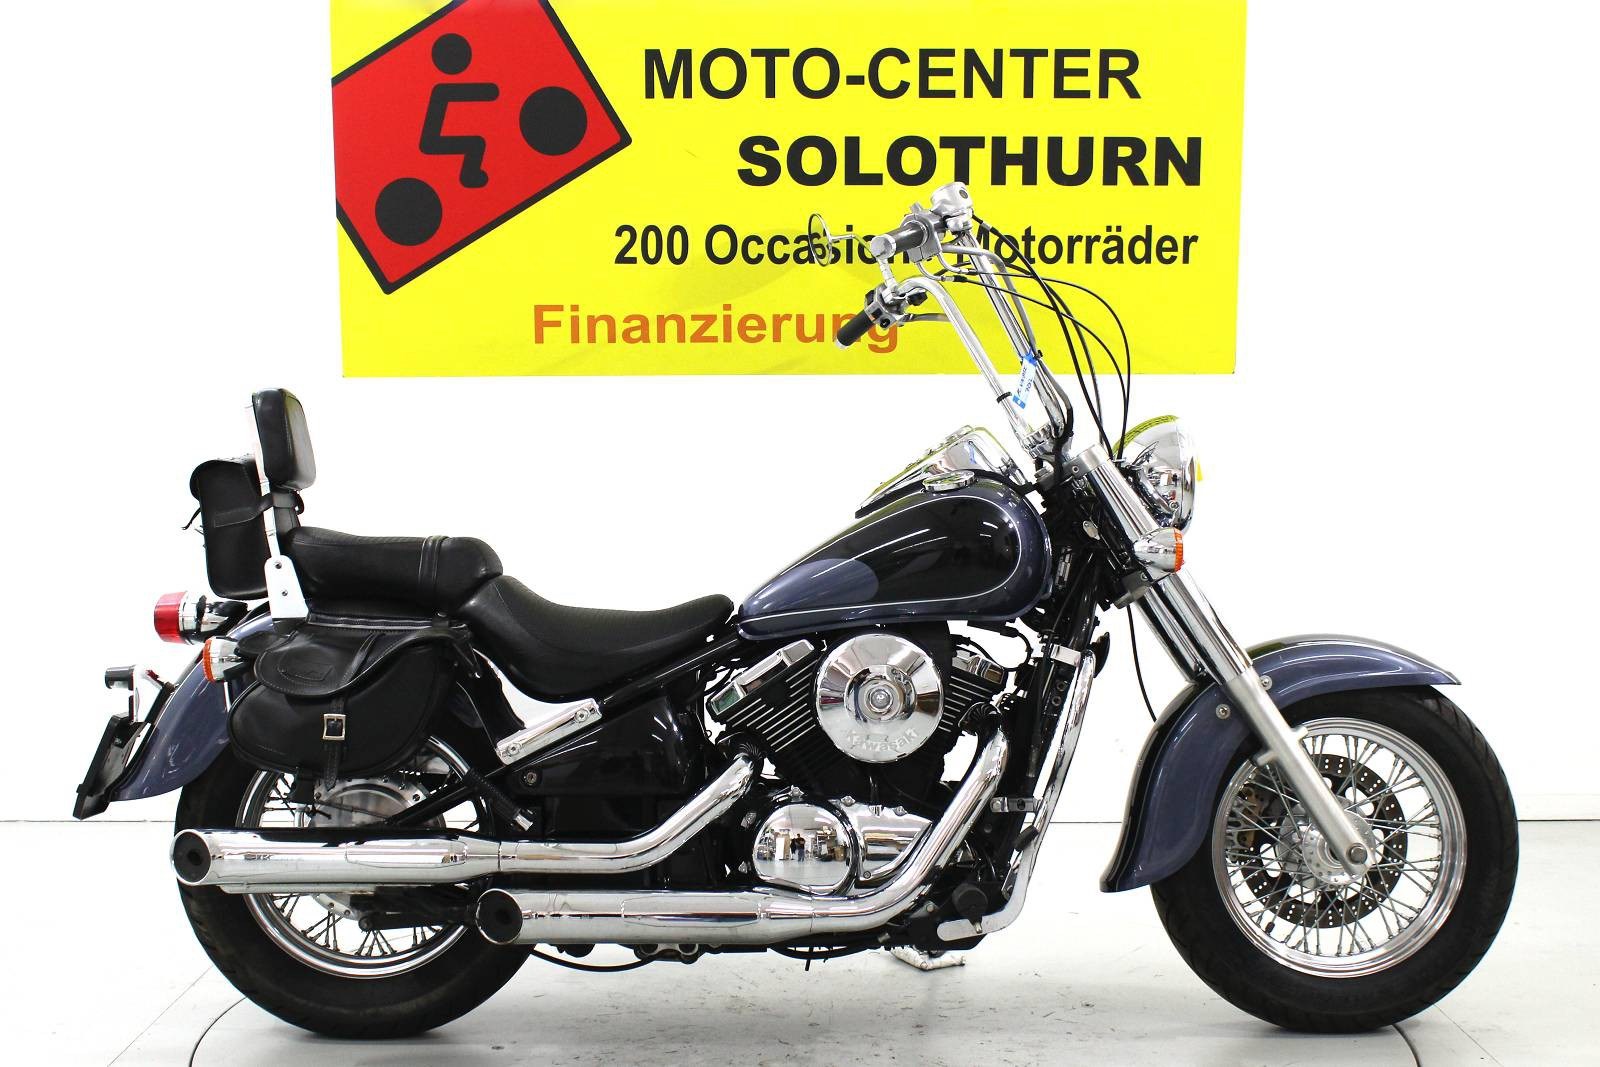 Acheter des moto Kawasaki VN 800 d'occasion sur AutoScout24